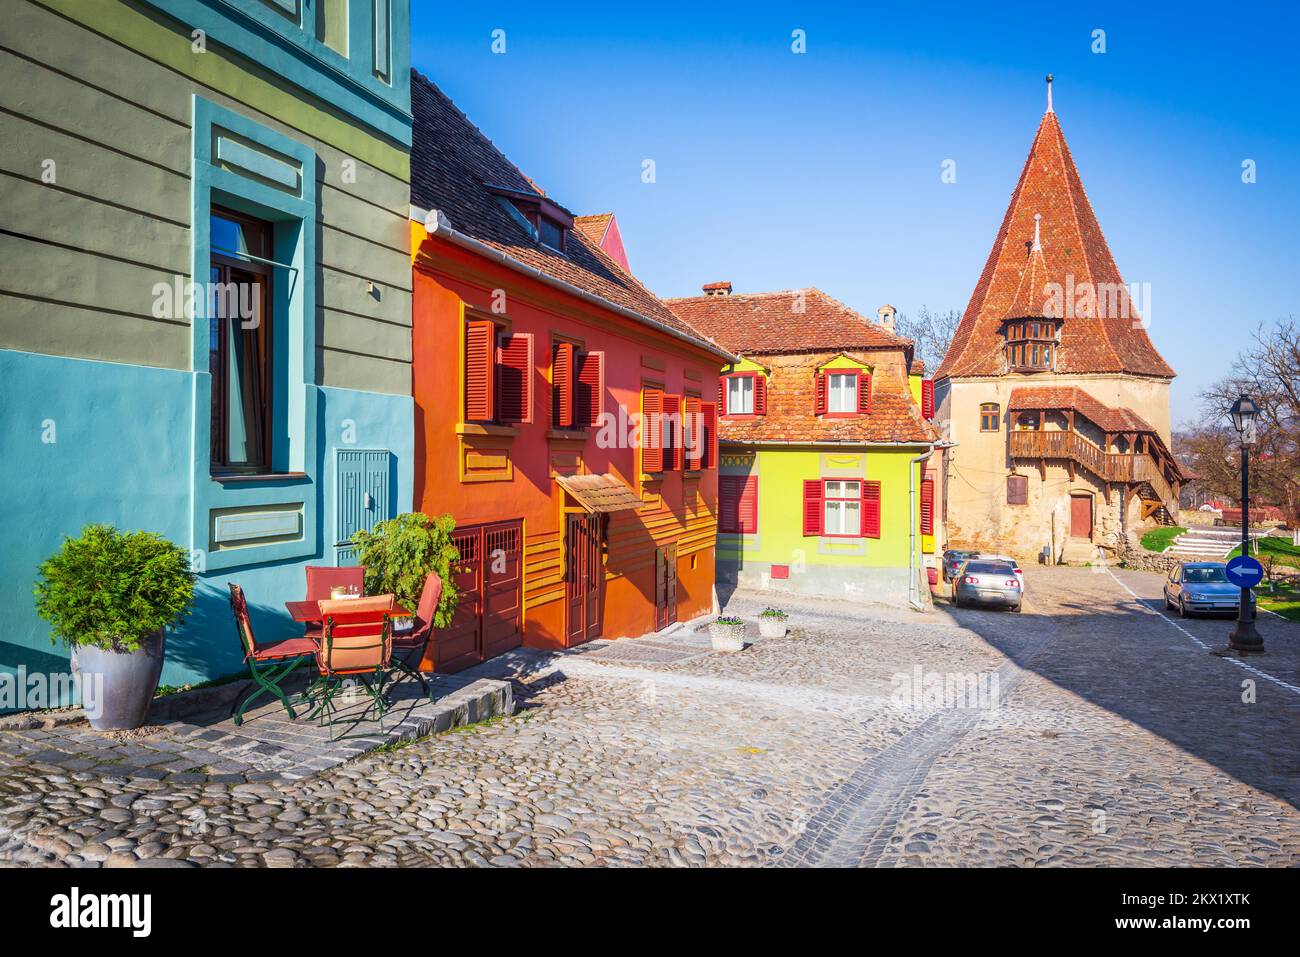 Sighisoara, Rumänien. Berühmte gepflasterte alte Straßen mit bunten Häusern in einer bezaubernden mittelalterlichen Stadt, Siebenbürgen Reiseziel in Osteuropa. Stockfoto